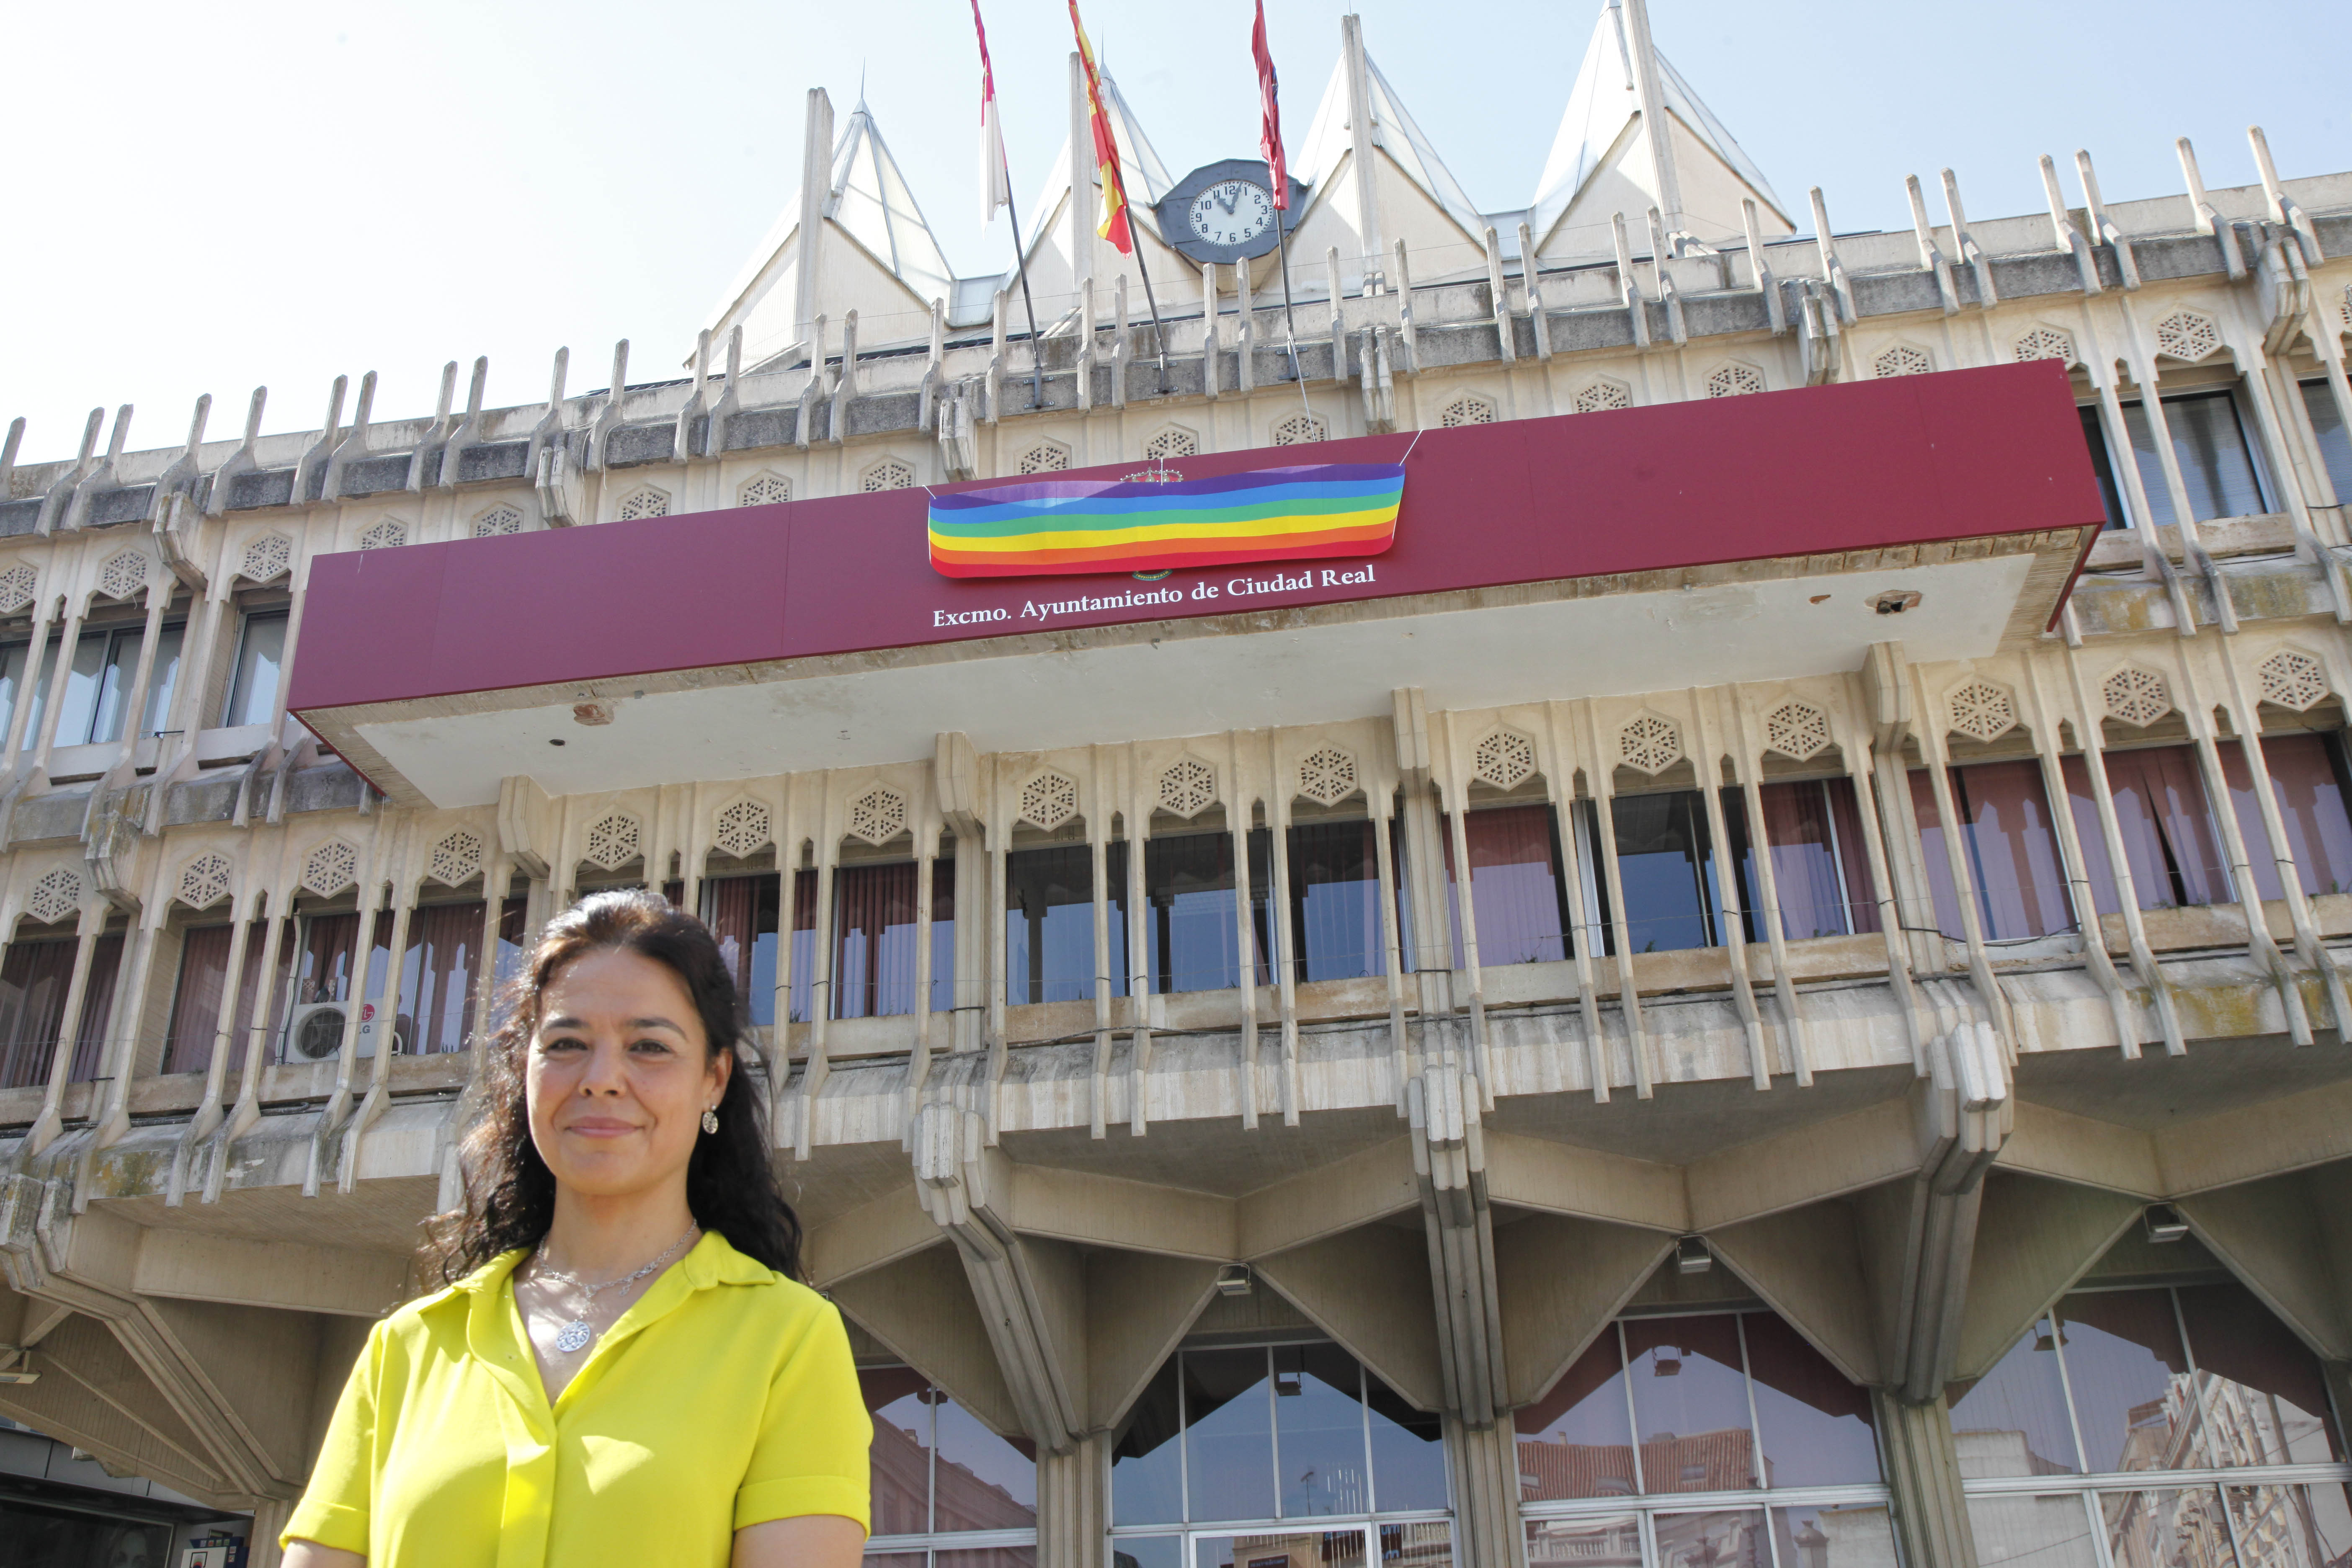 La bandera arcoíris ya ondea en el balcón del Ayuntamiento de Ciudad Real